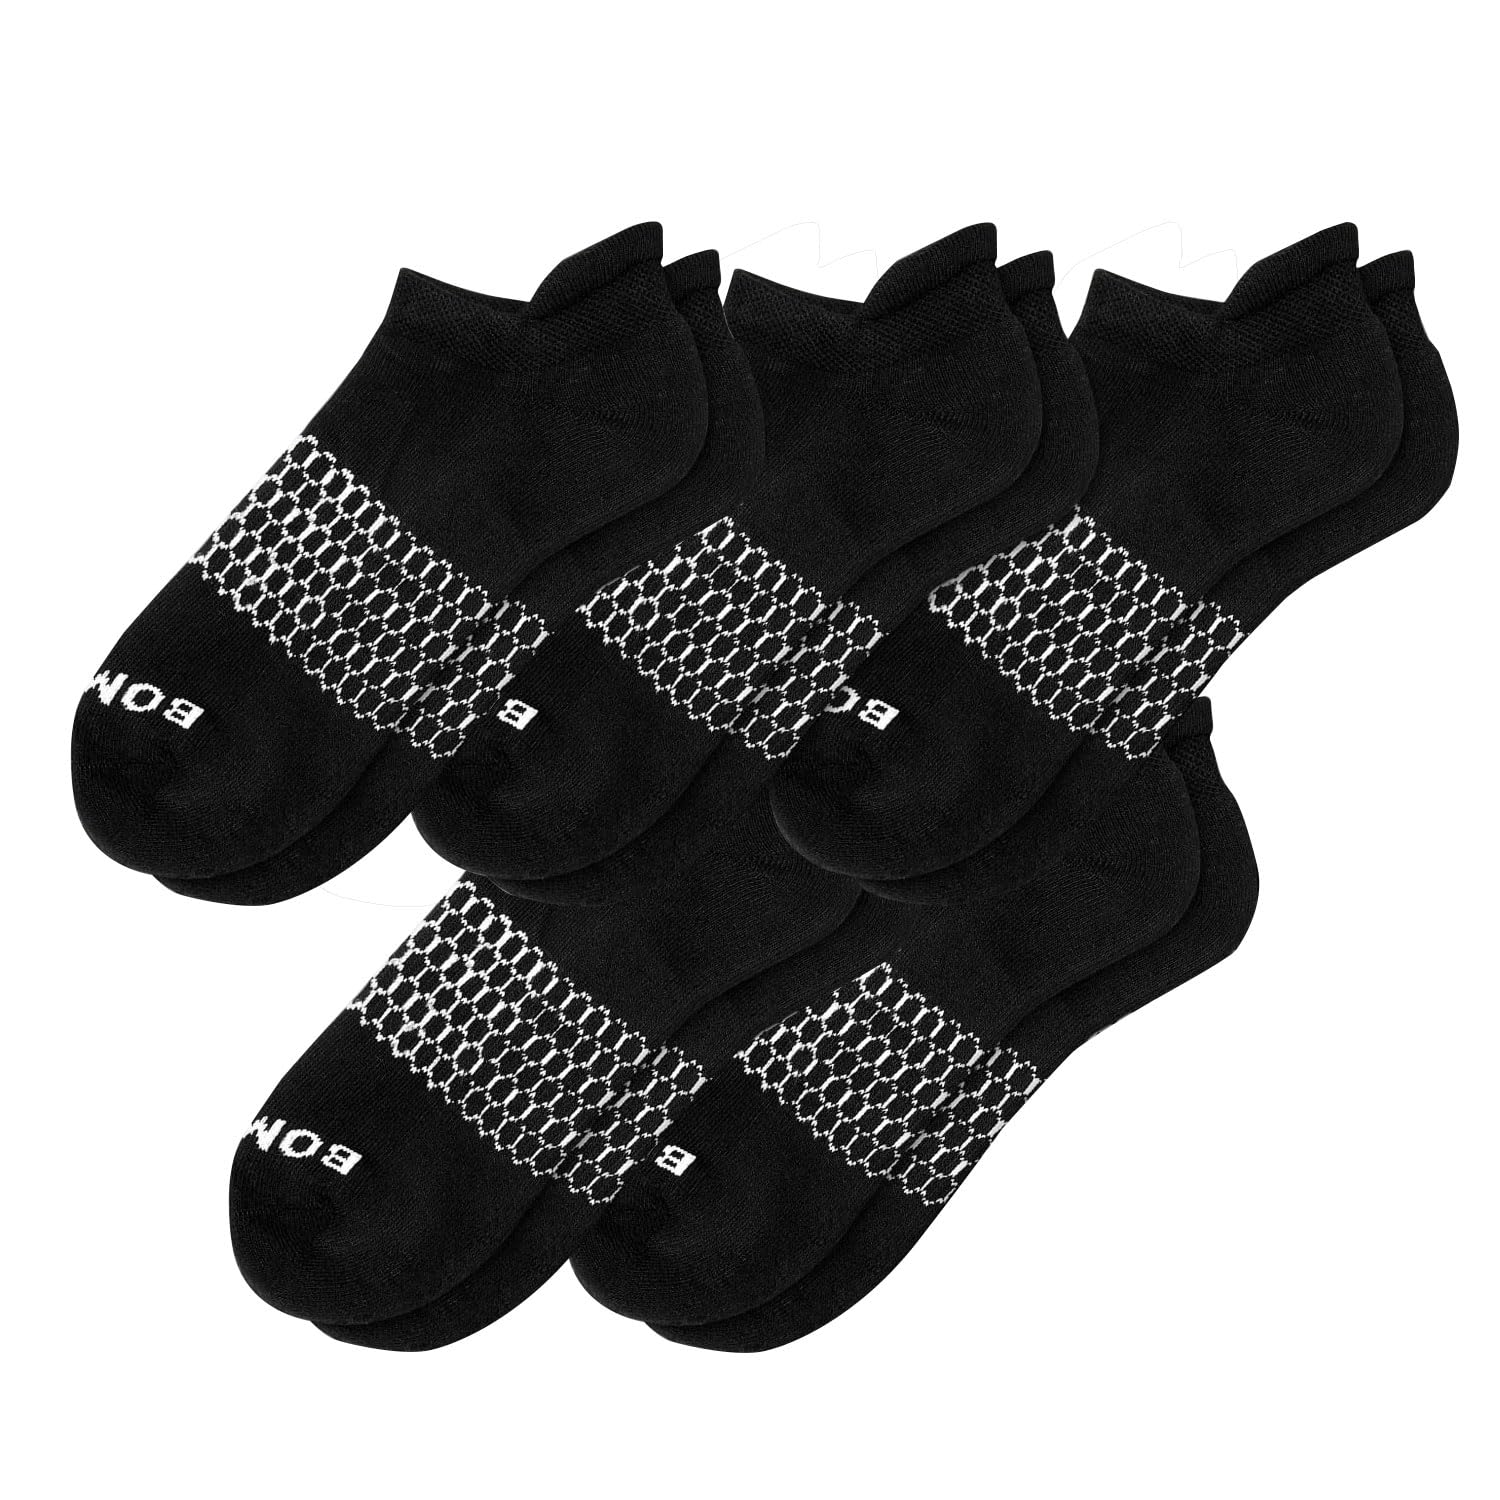 BOMBAS 5-Pack Men's ankle Socks White Honeycomb LARGE